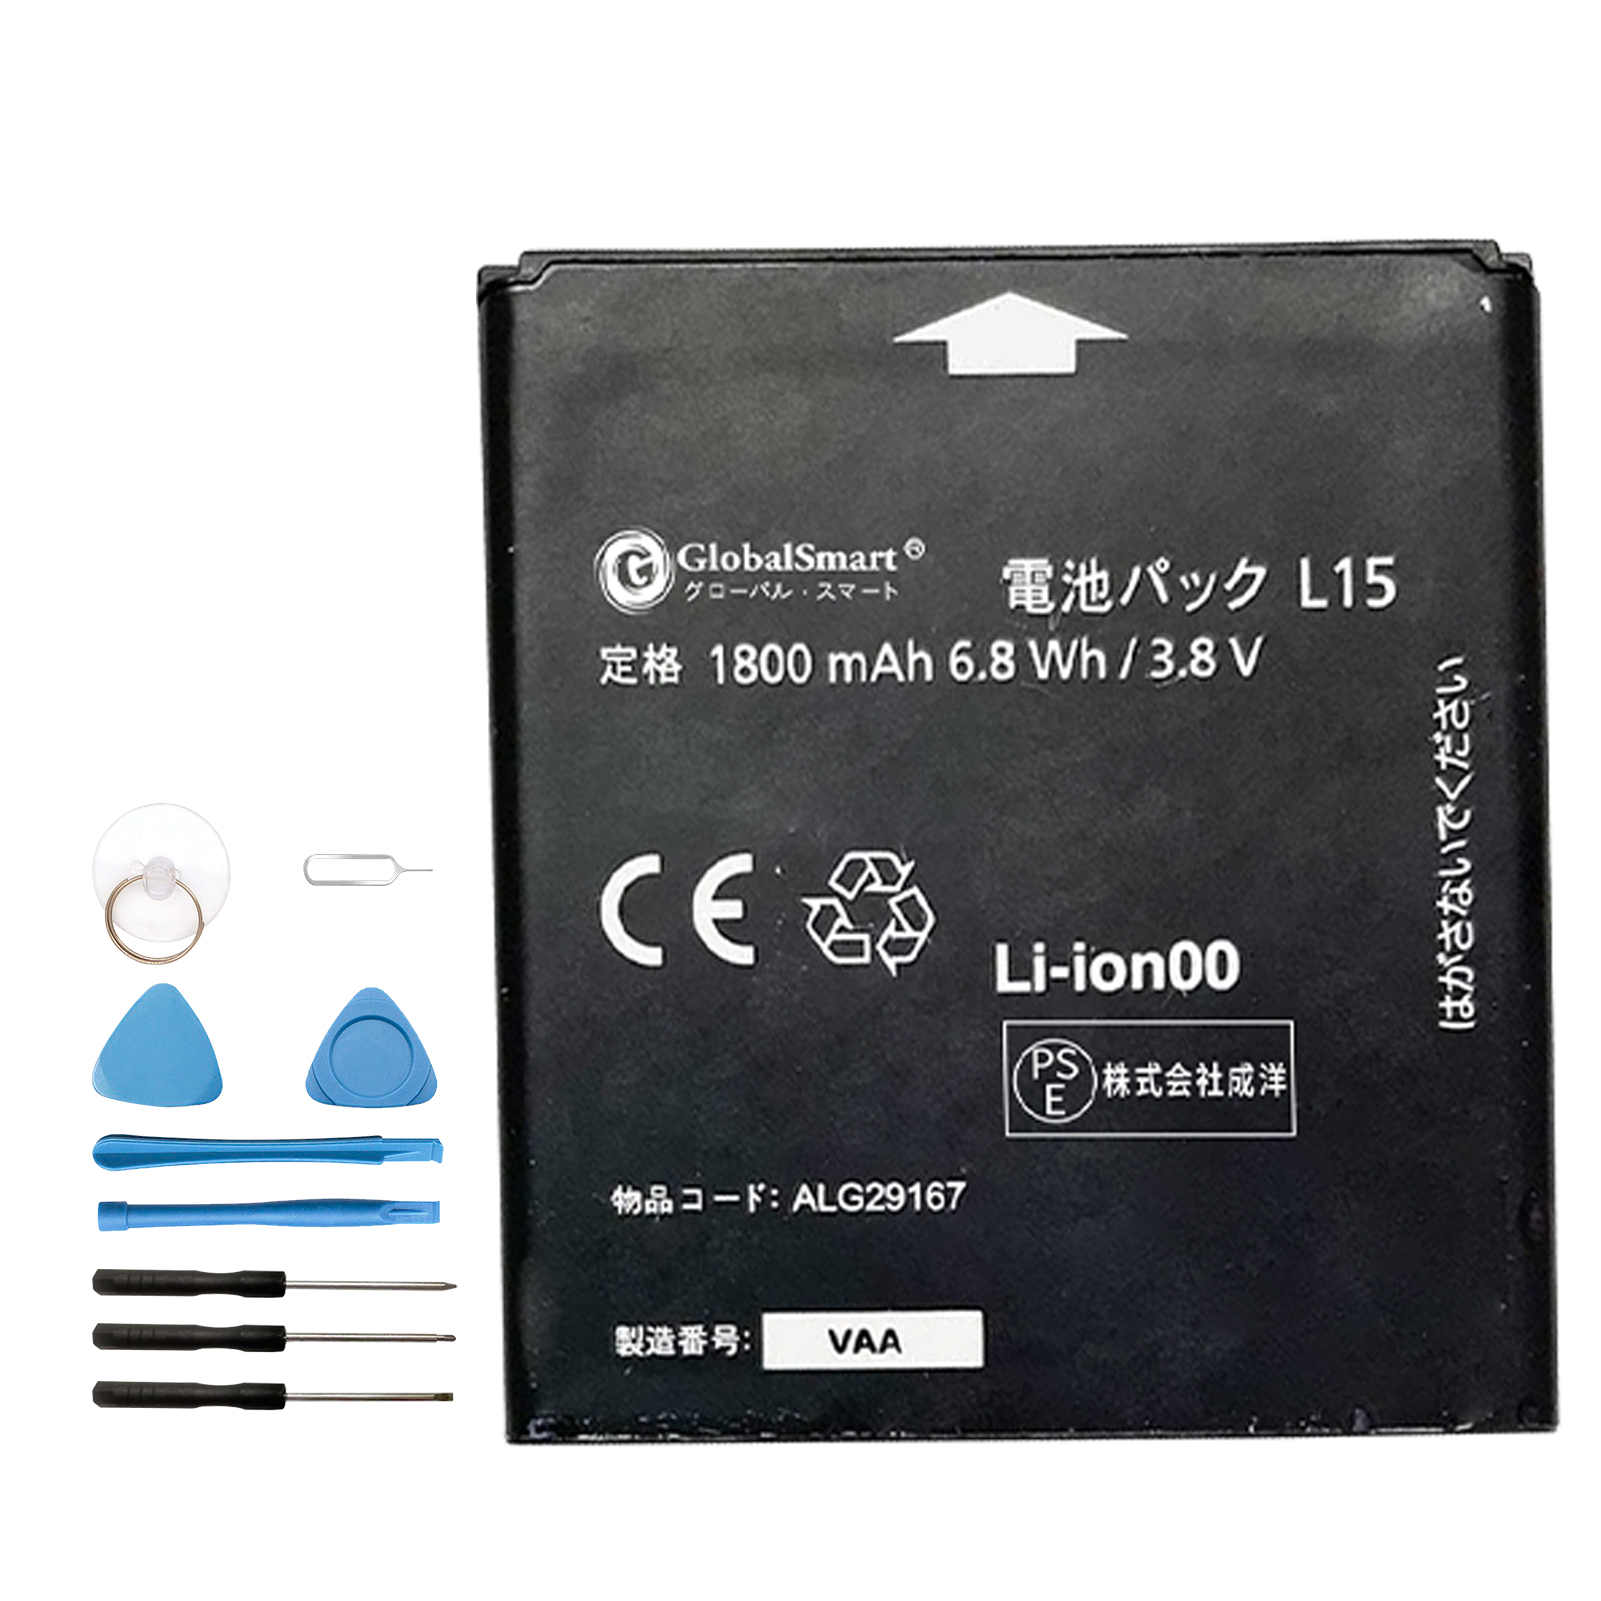 新品 SHARP L15 交換電池パック 1800mAh 3.8V PSE認証済 1年保証 交換用キット 大容量バッテリー